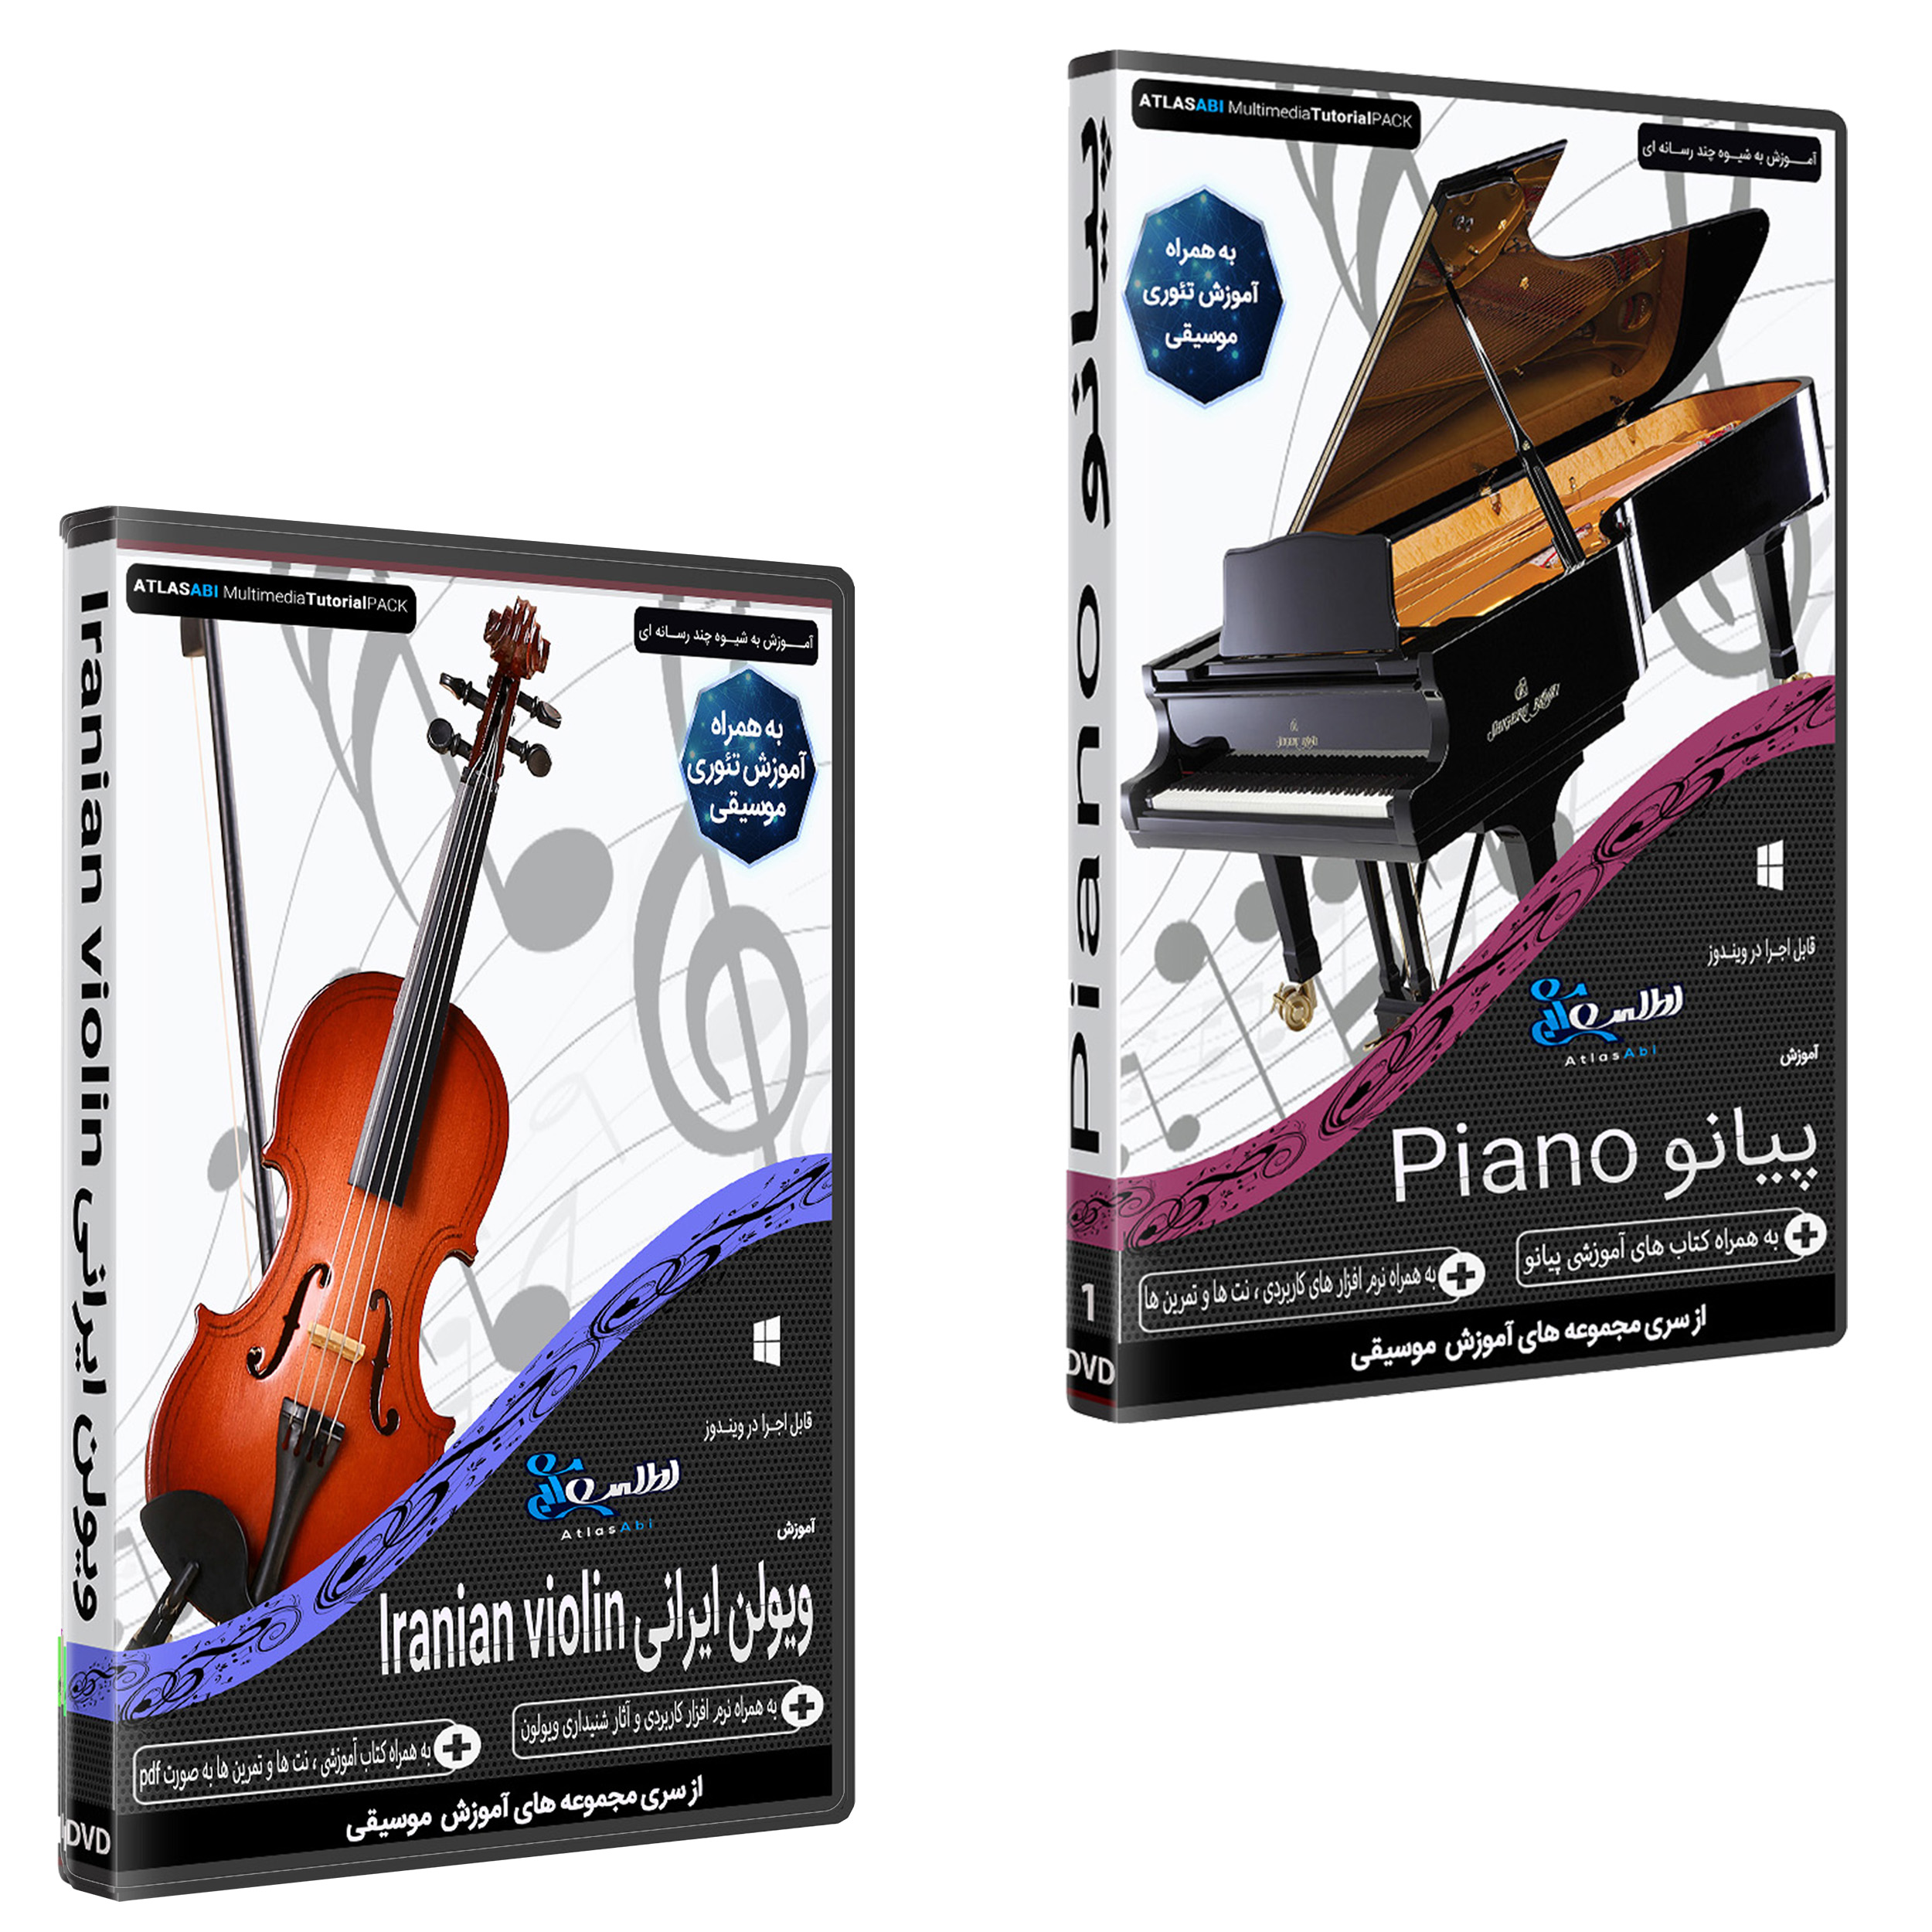 نرم افزار آموزش موسیقی پیانو نشر اطلس آبی به همراه نرم افزار آموزش ویولن ایرانی نشر اطلس آبی